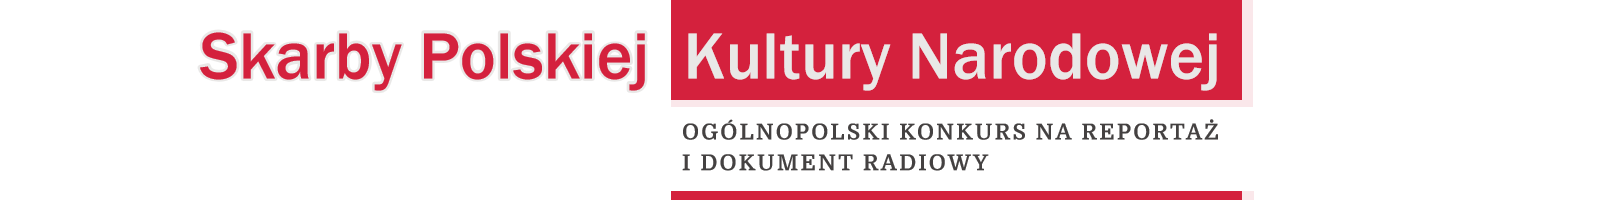 Skarby Polskiej Kultury Narodowej | Powitanie Radio Zachód - Lubuskie